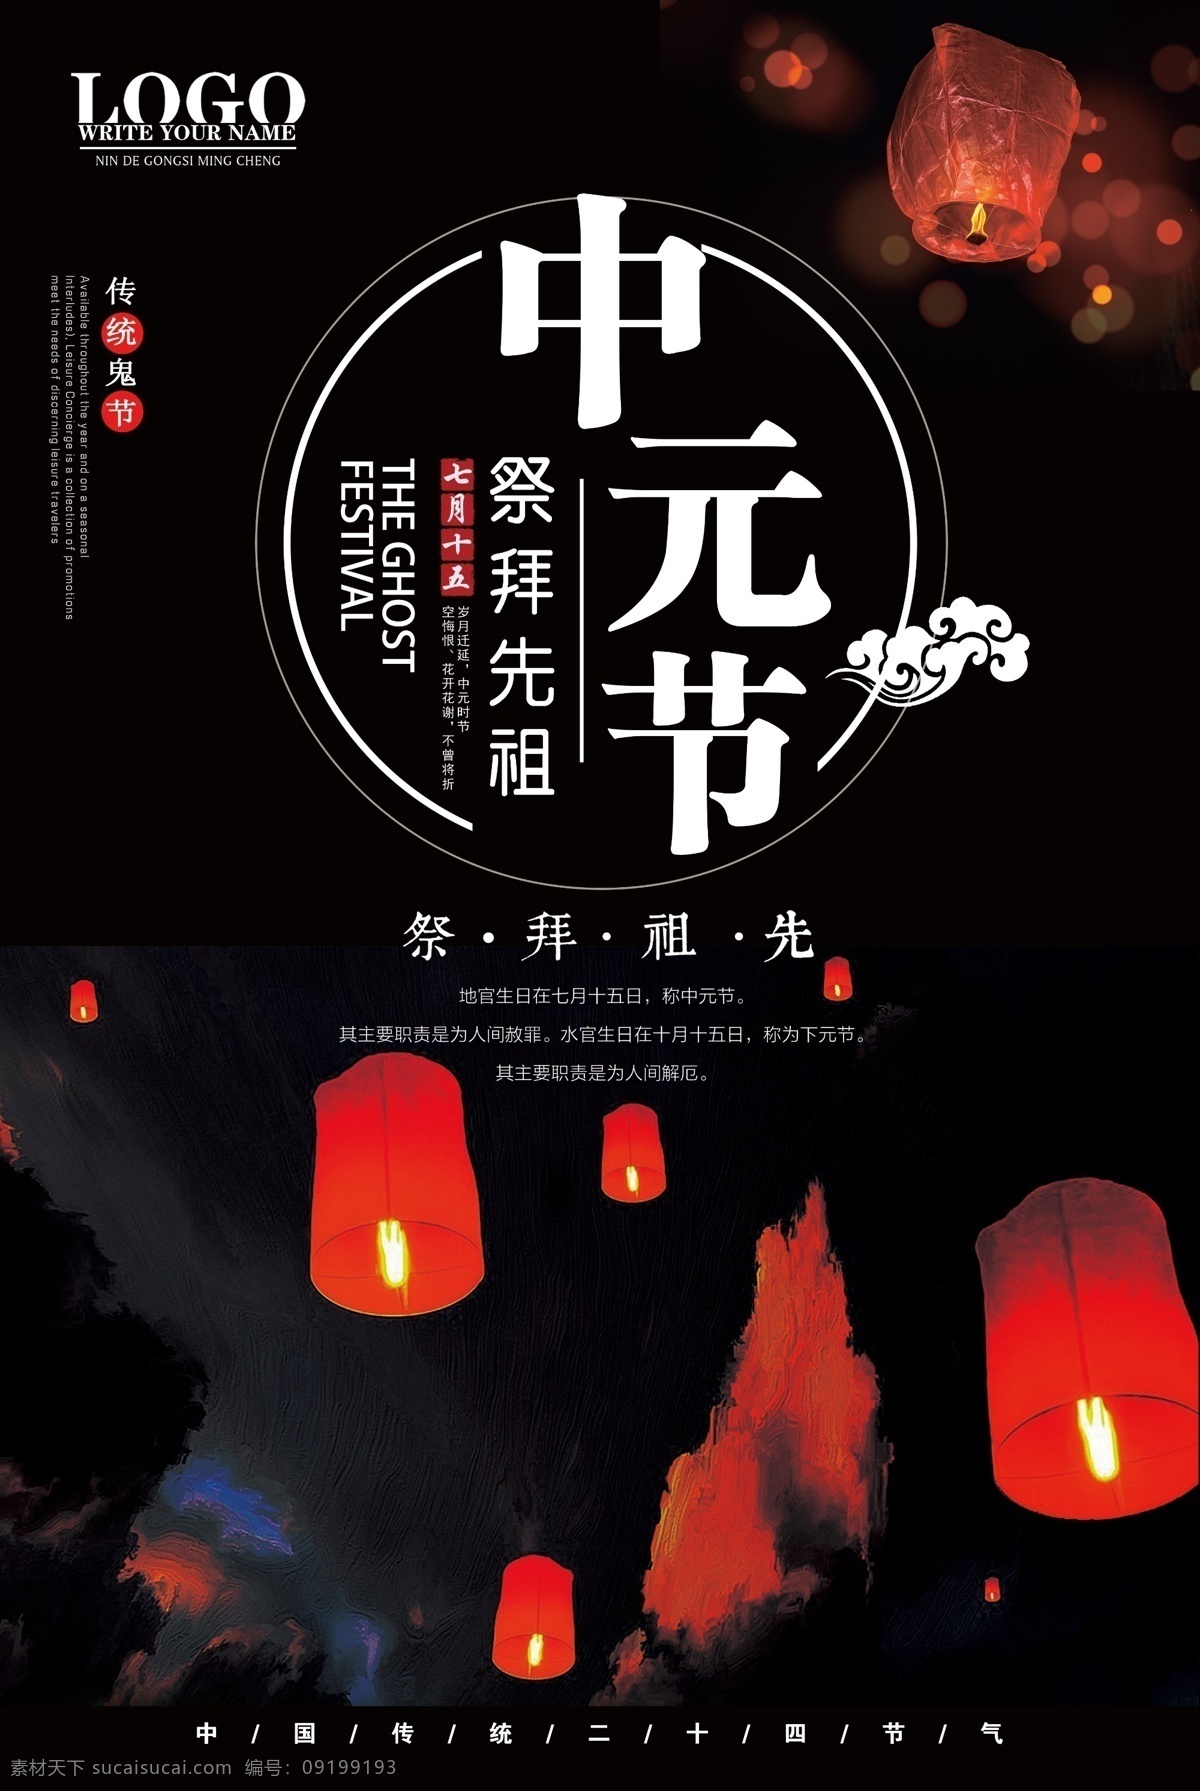 中元节 鬼节 海报 祭祀 祭奠 传统节日 七月半 七月十五